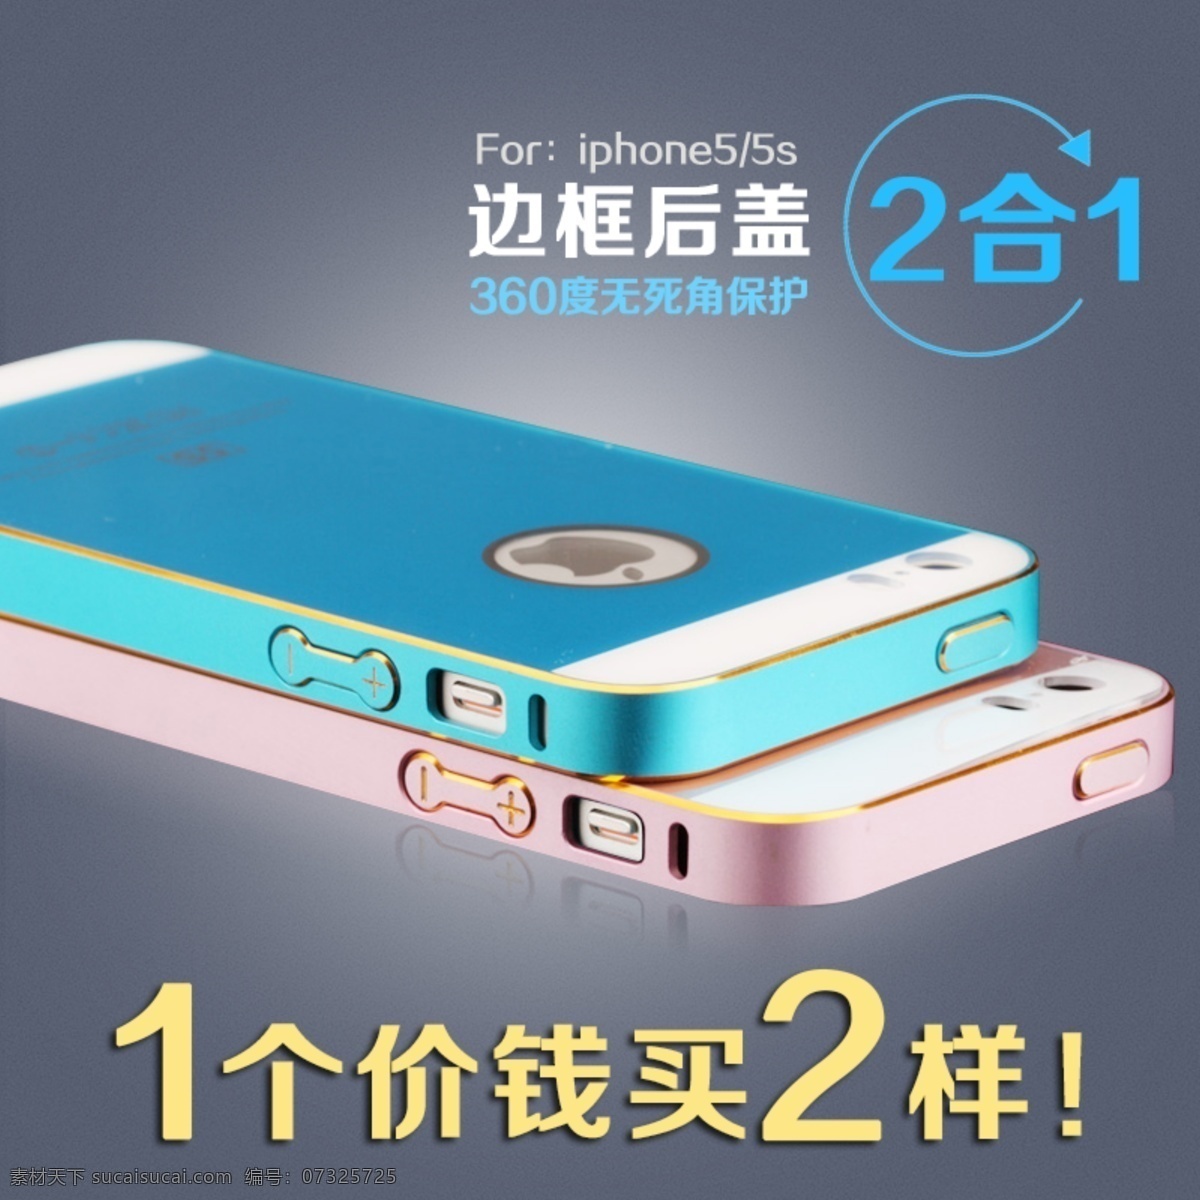 朗宁 iphone5s 手机 边框 后 膜 直通车 手机壳 贴膜 主图 后膜 原创设计 原创淘宝设计